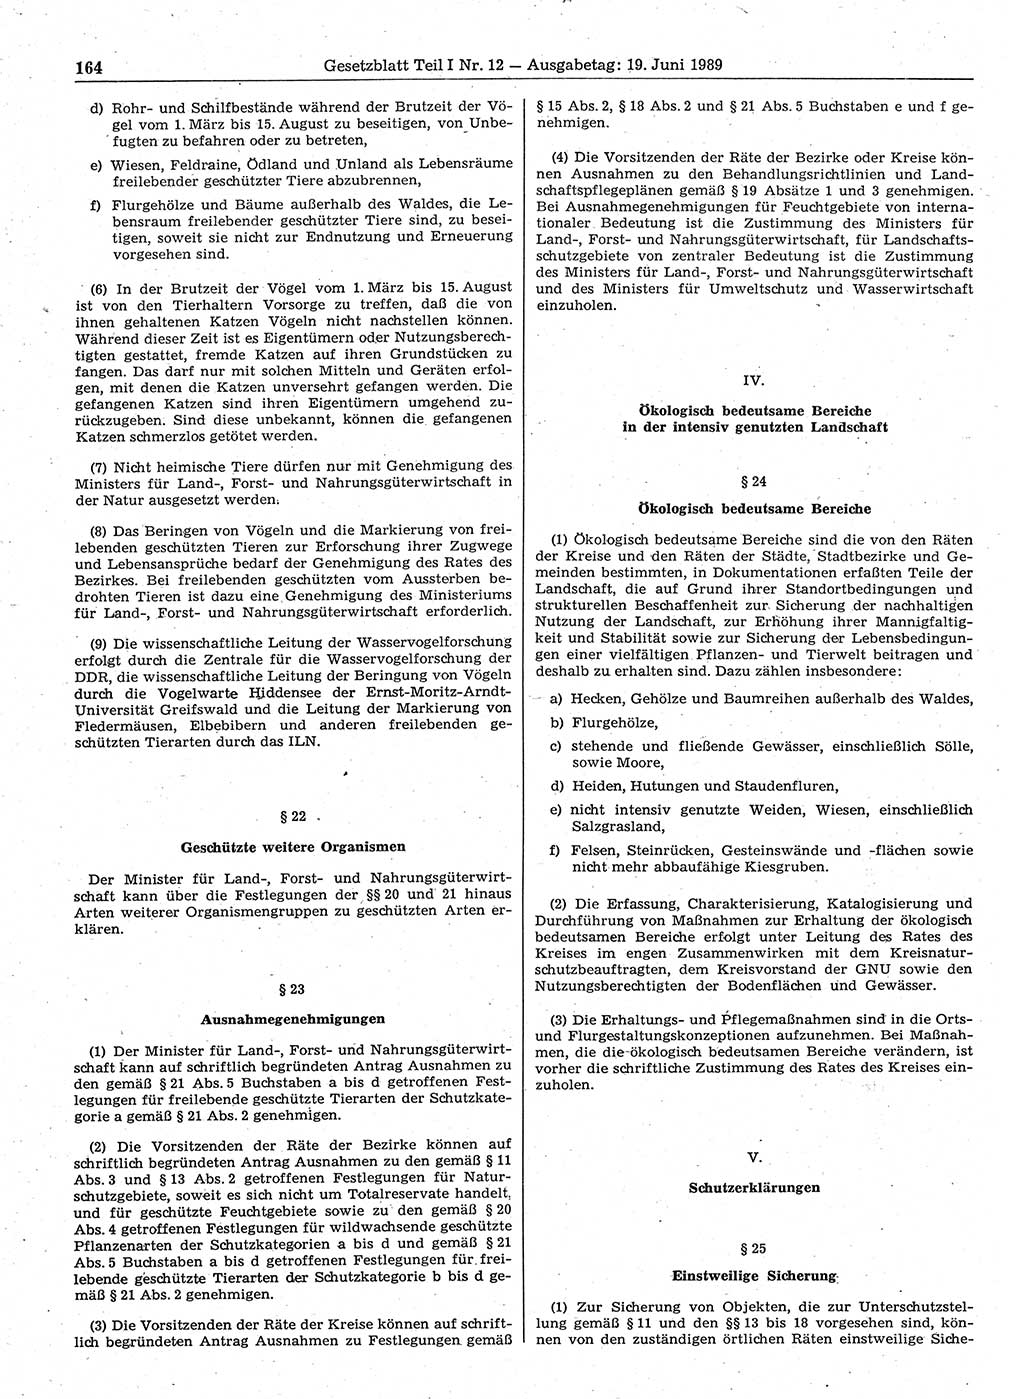 Gesetzblatt (GBl.) der Deutschen Demokratischen Republik (DDR) Teil Ⅰ 1989, Seite 164 (GBl. DDR Ⅰ 1989, S. 164)